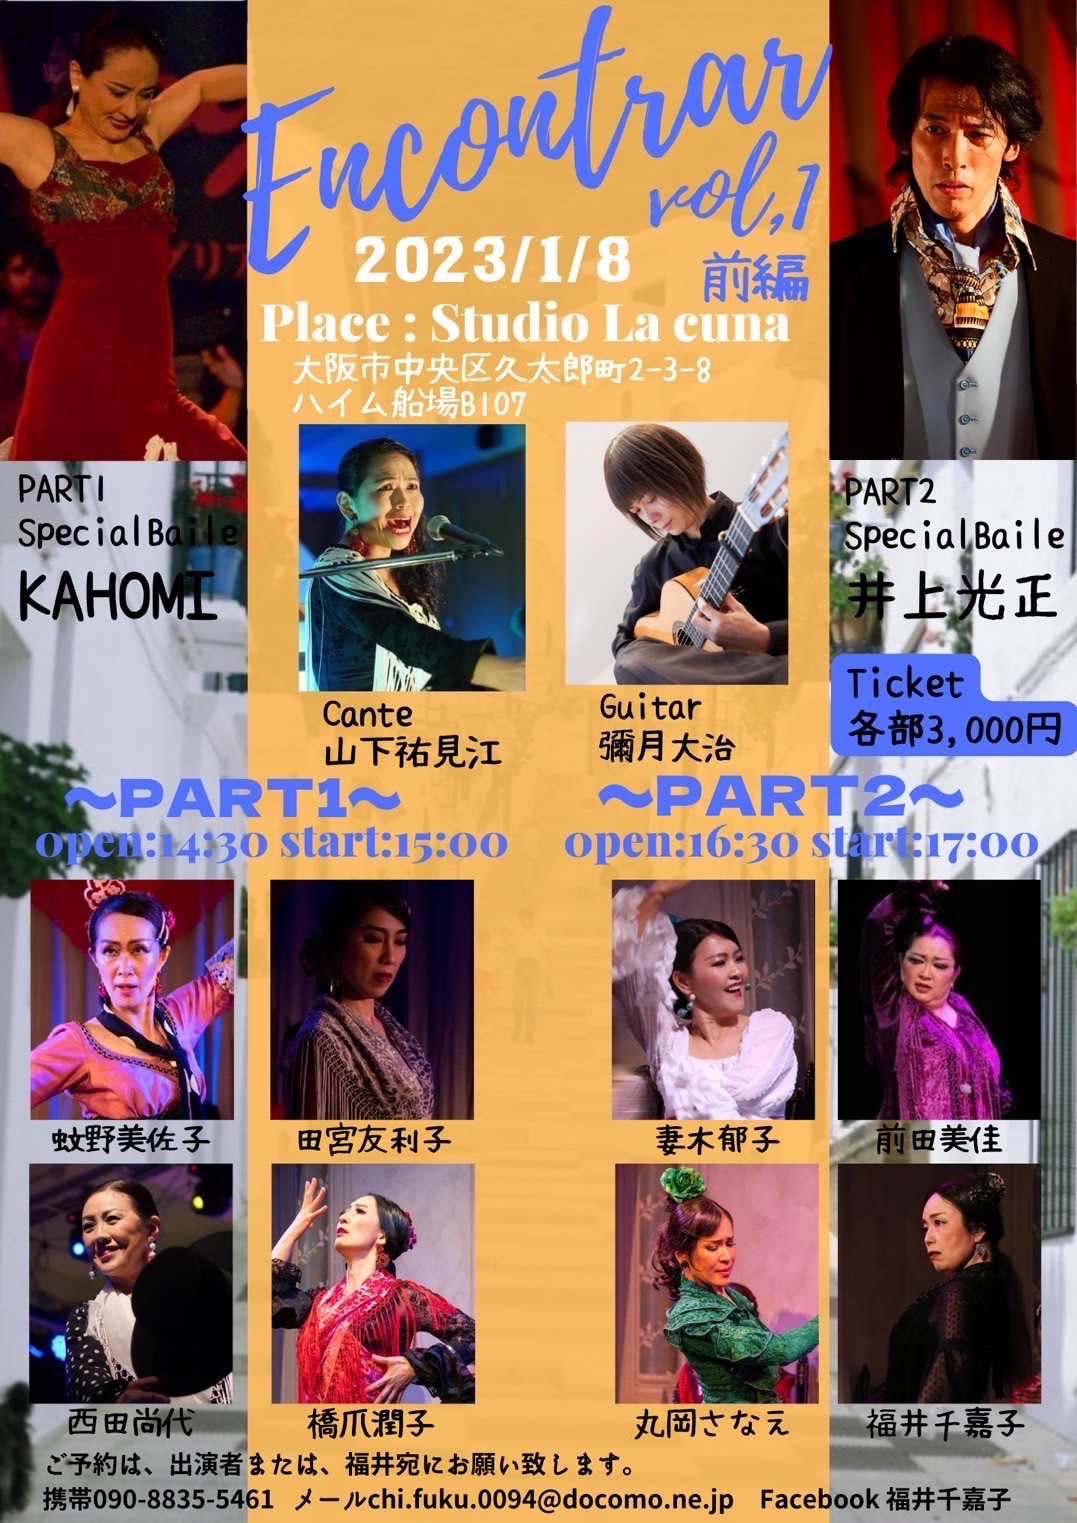 2023年1月8日(日)＆9日(月祝) Flamenco Live『Encontrar vol.1』2days企画（大阪＆三重）出演